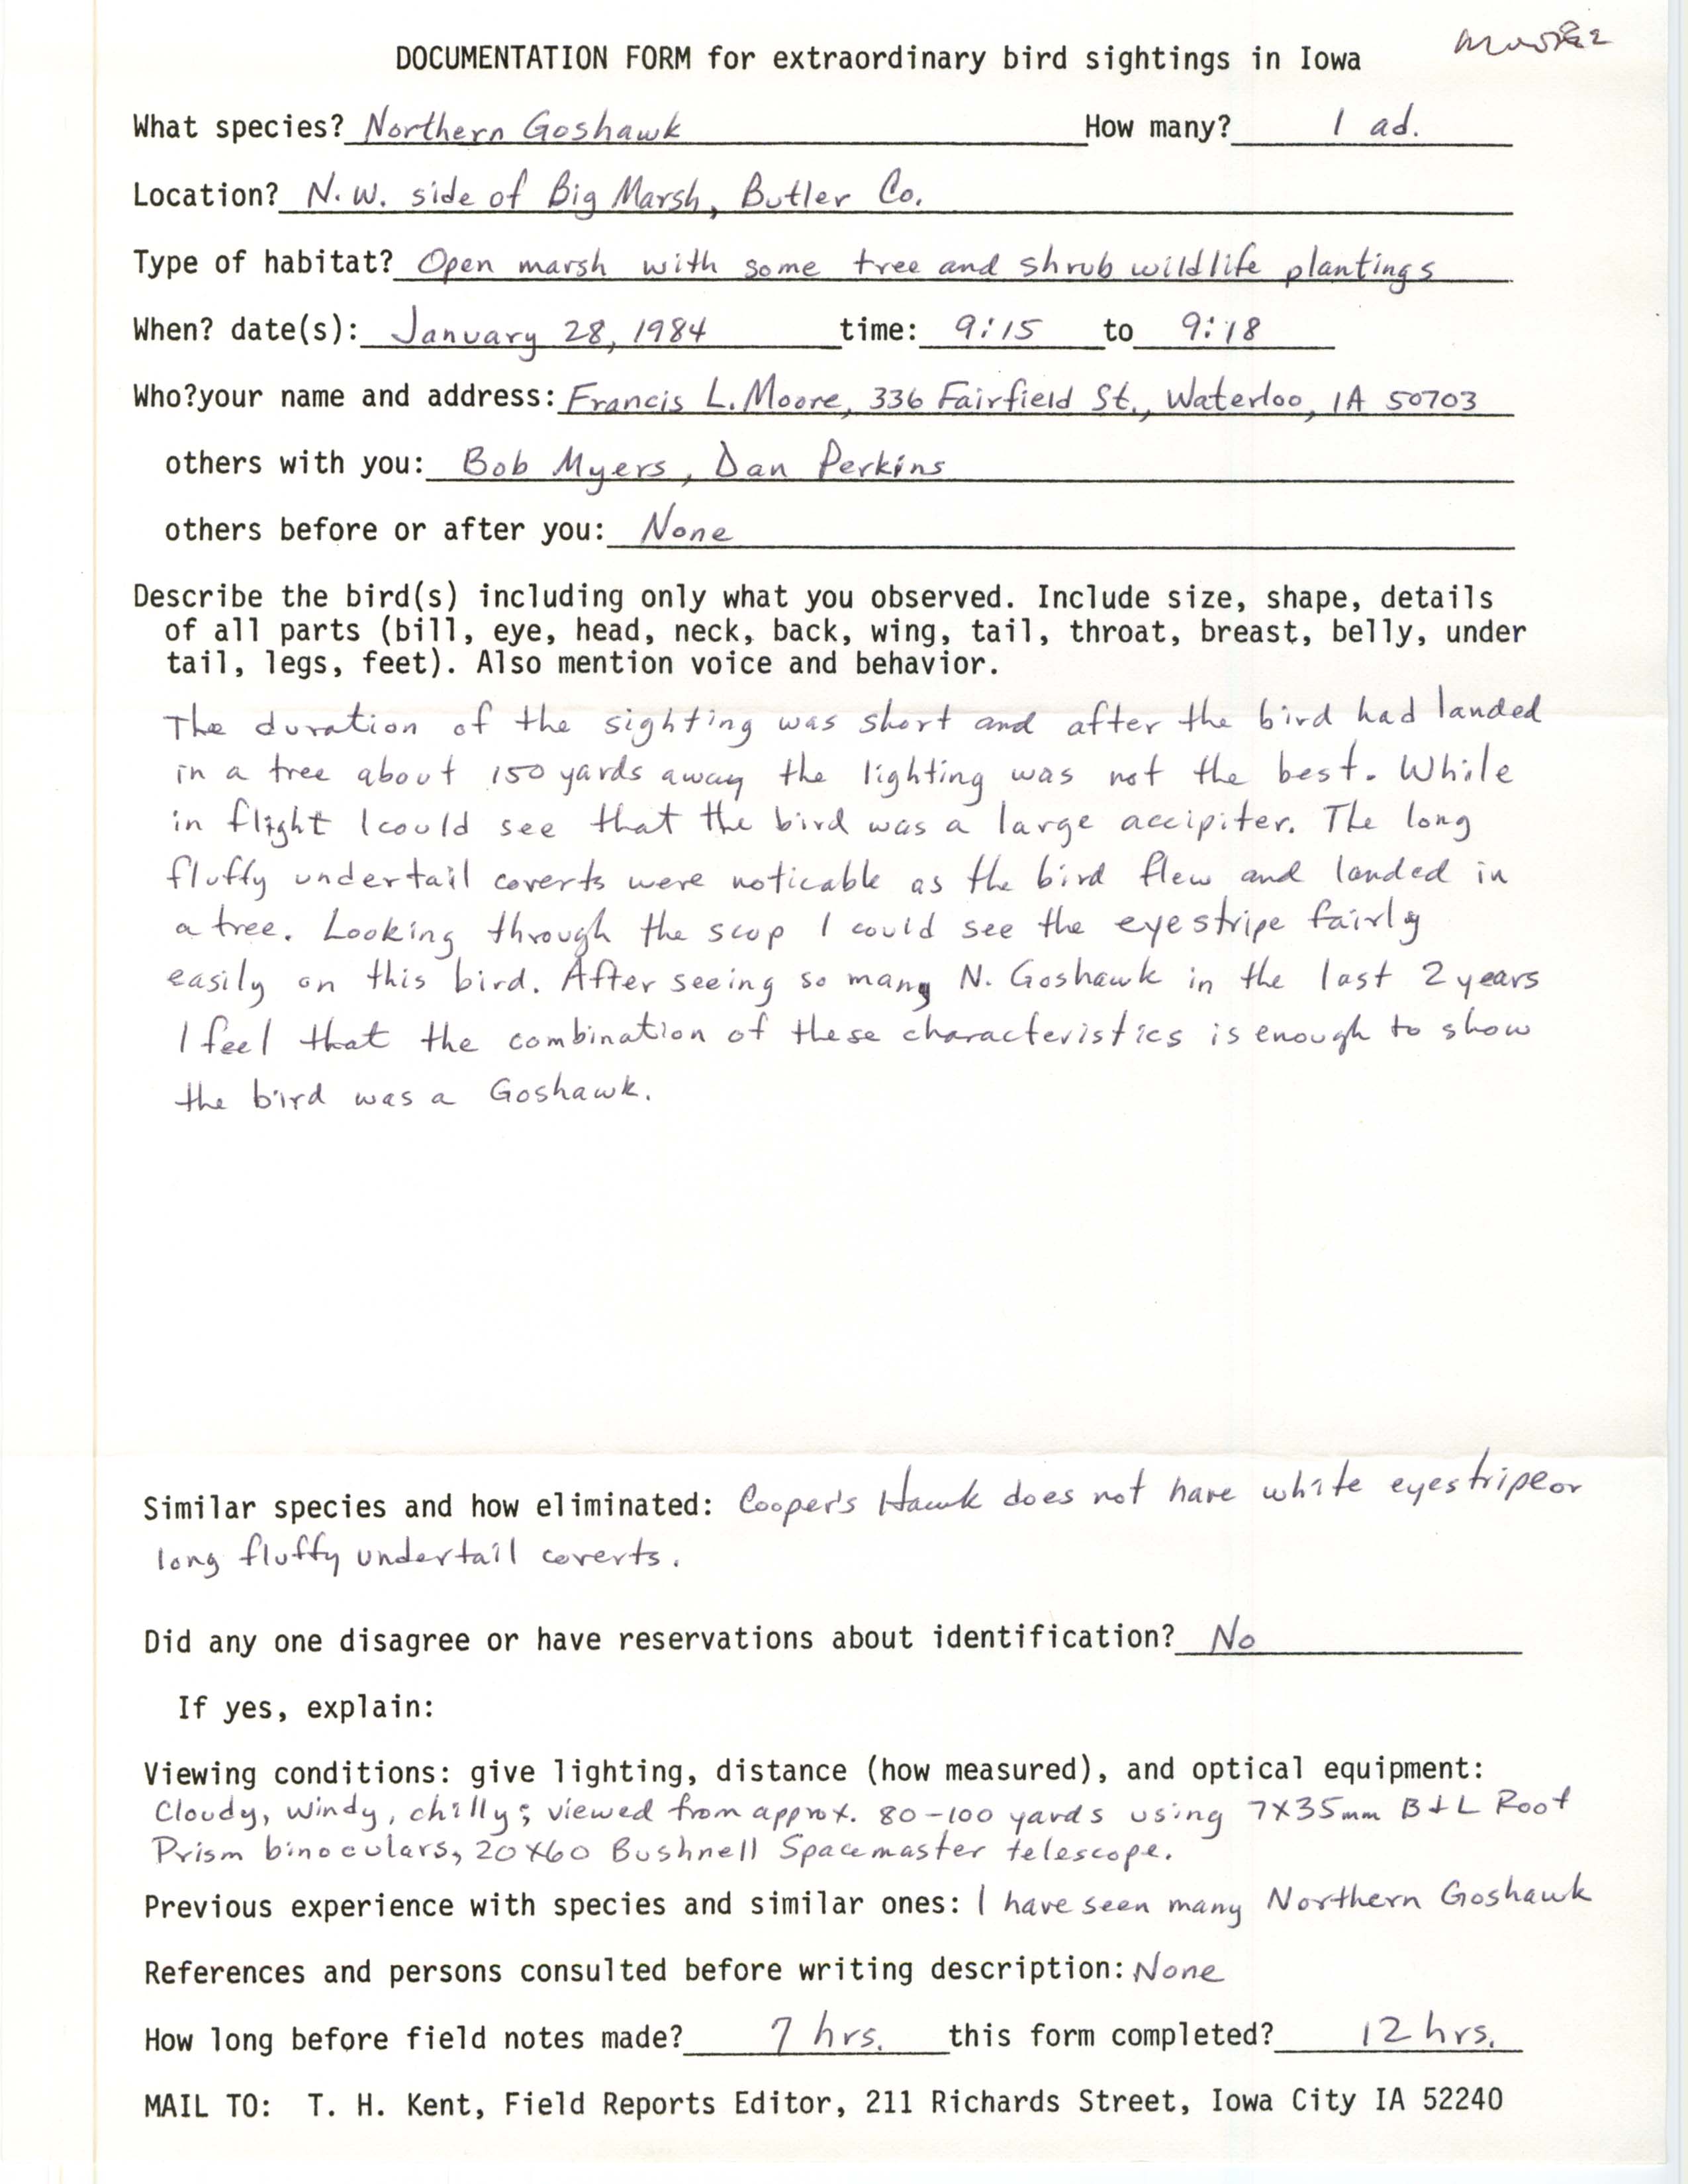 Rare bird documentation form for Northern Goshawk at Big Marsh, 1984